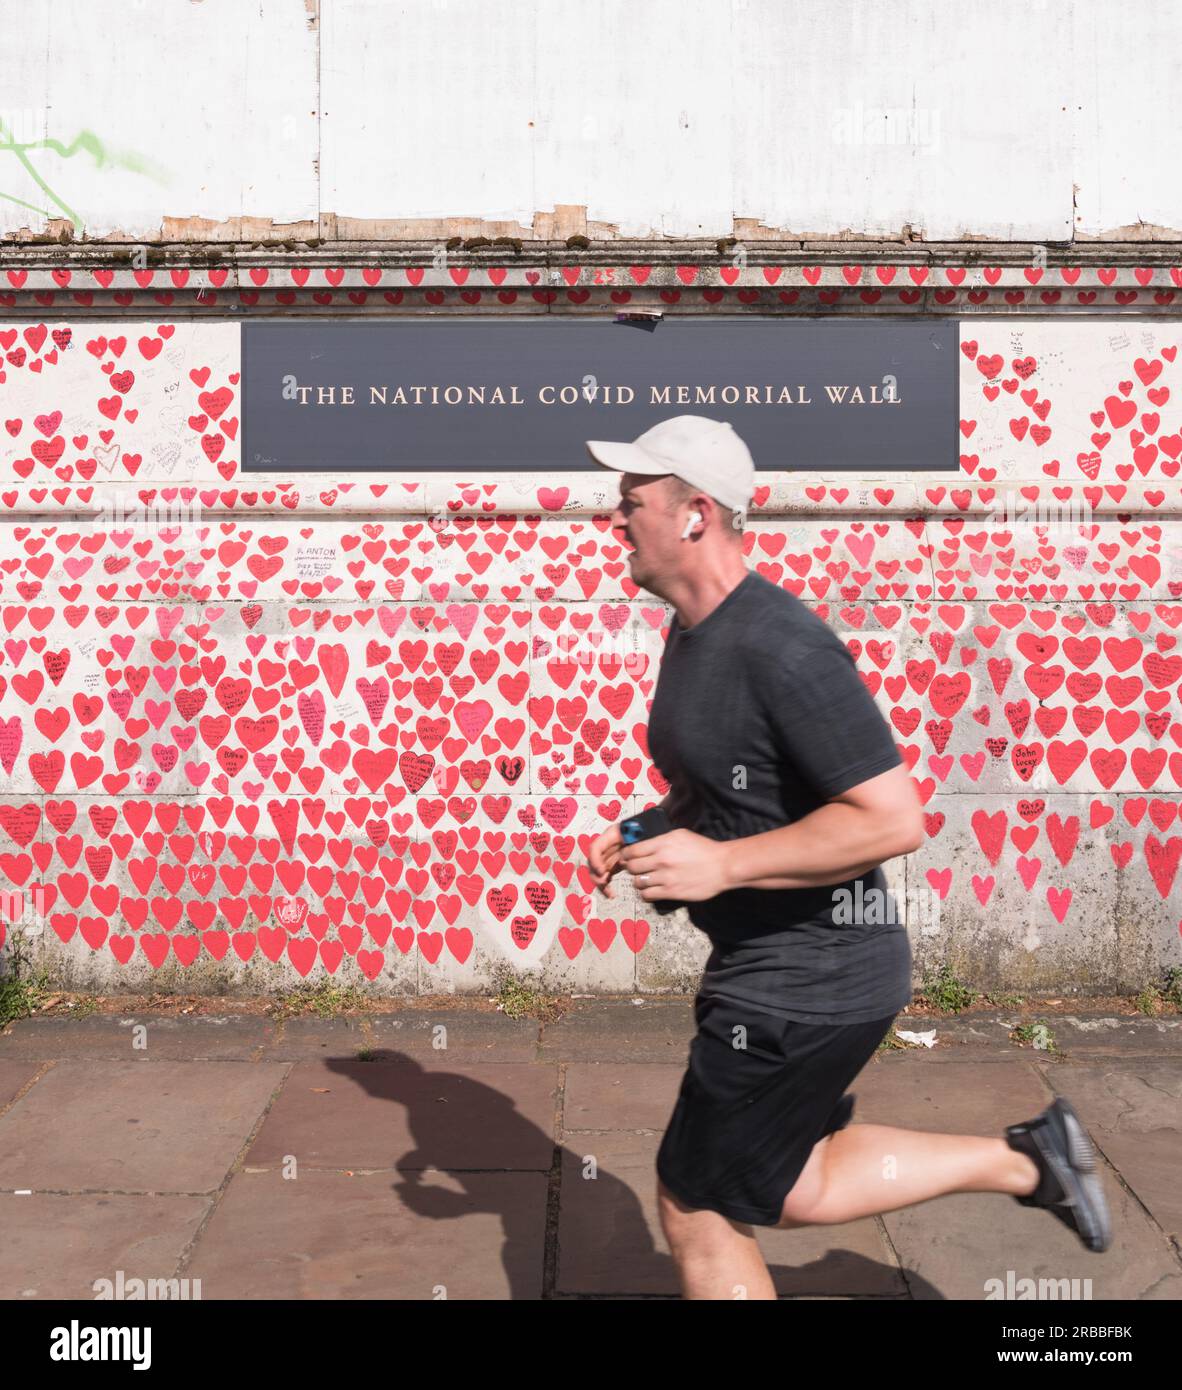 Cuori rossi e rosa sul National Covid Memorial Wall, Londra, Inghilterra, Regno Unito. Foto Stock